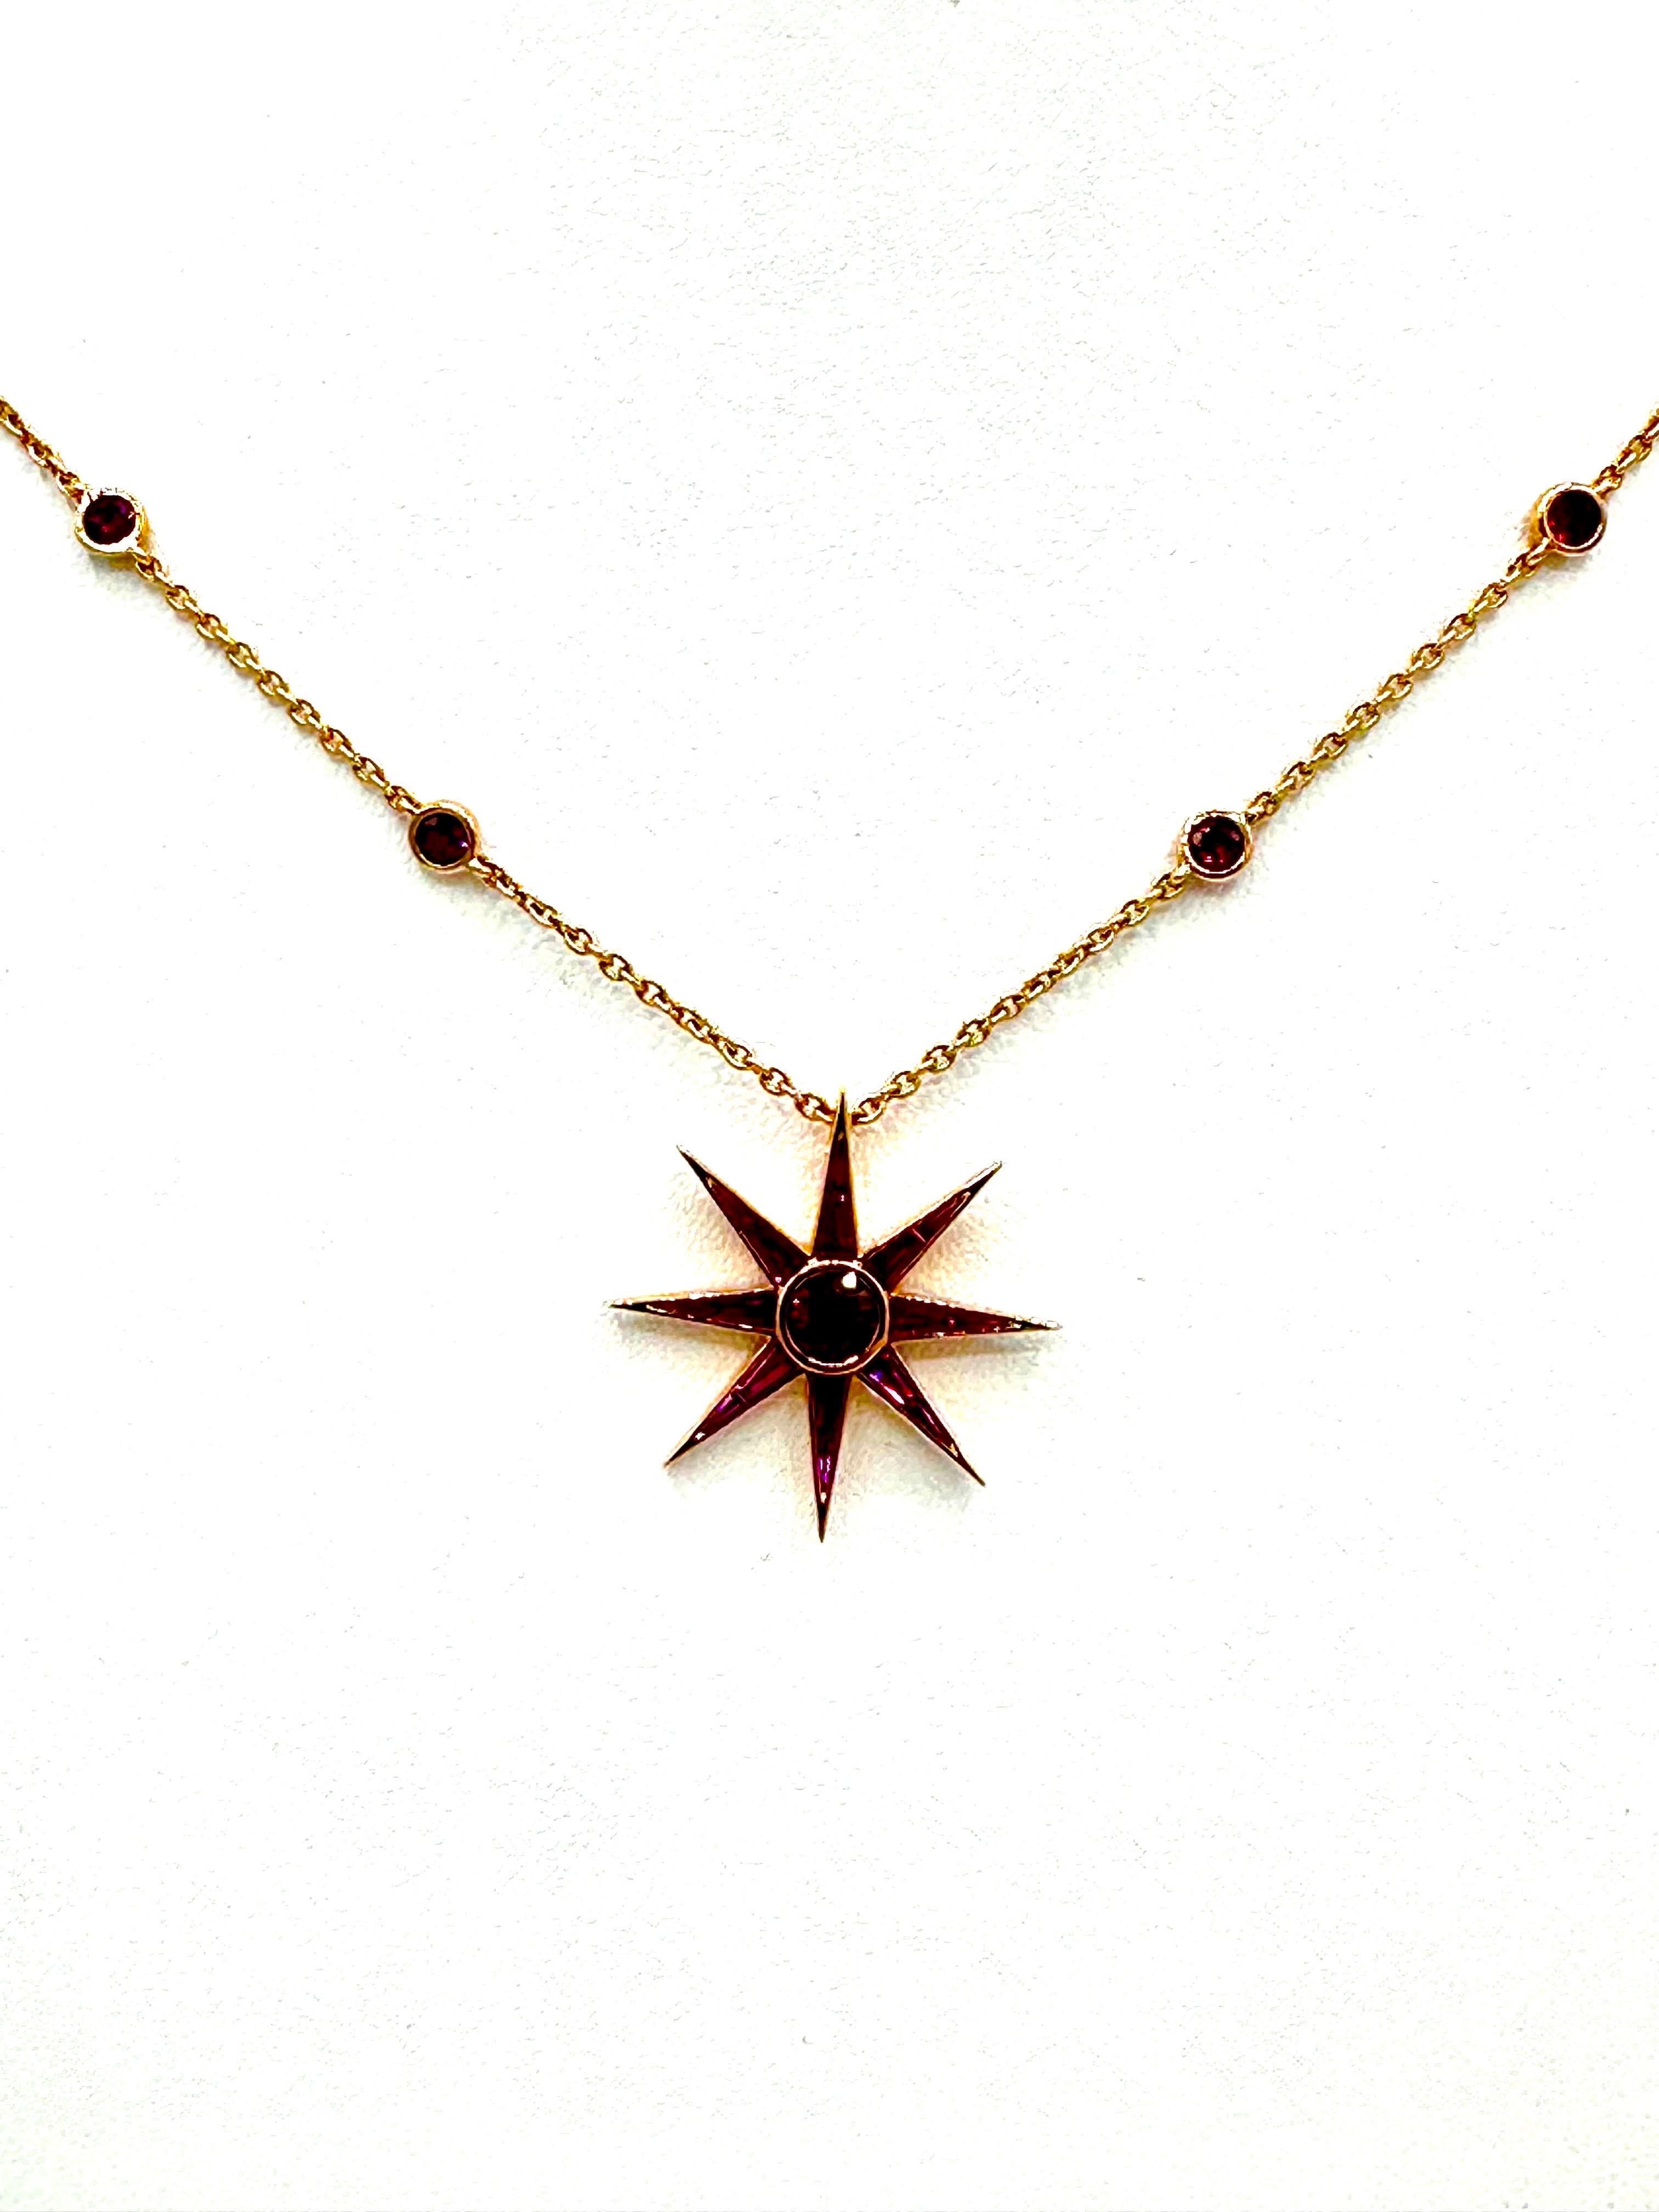 Diese Halskette ist fantastisch!  Diese vom weltberühmten Designer Robert Procop entworfene Halskette mit Rubin Luminous Starburst-Anhänger beeindruckt mit 2,96 Karat Rubinen.  Der Anhänger ist mit einem runden Rubin mit Brillantschliff in der Mitte